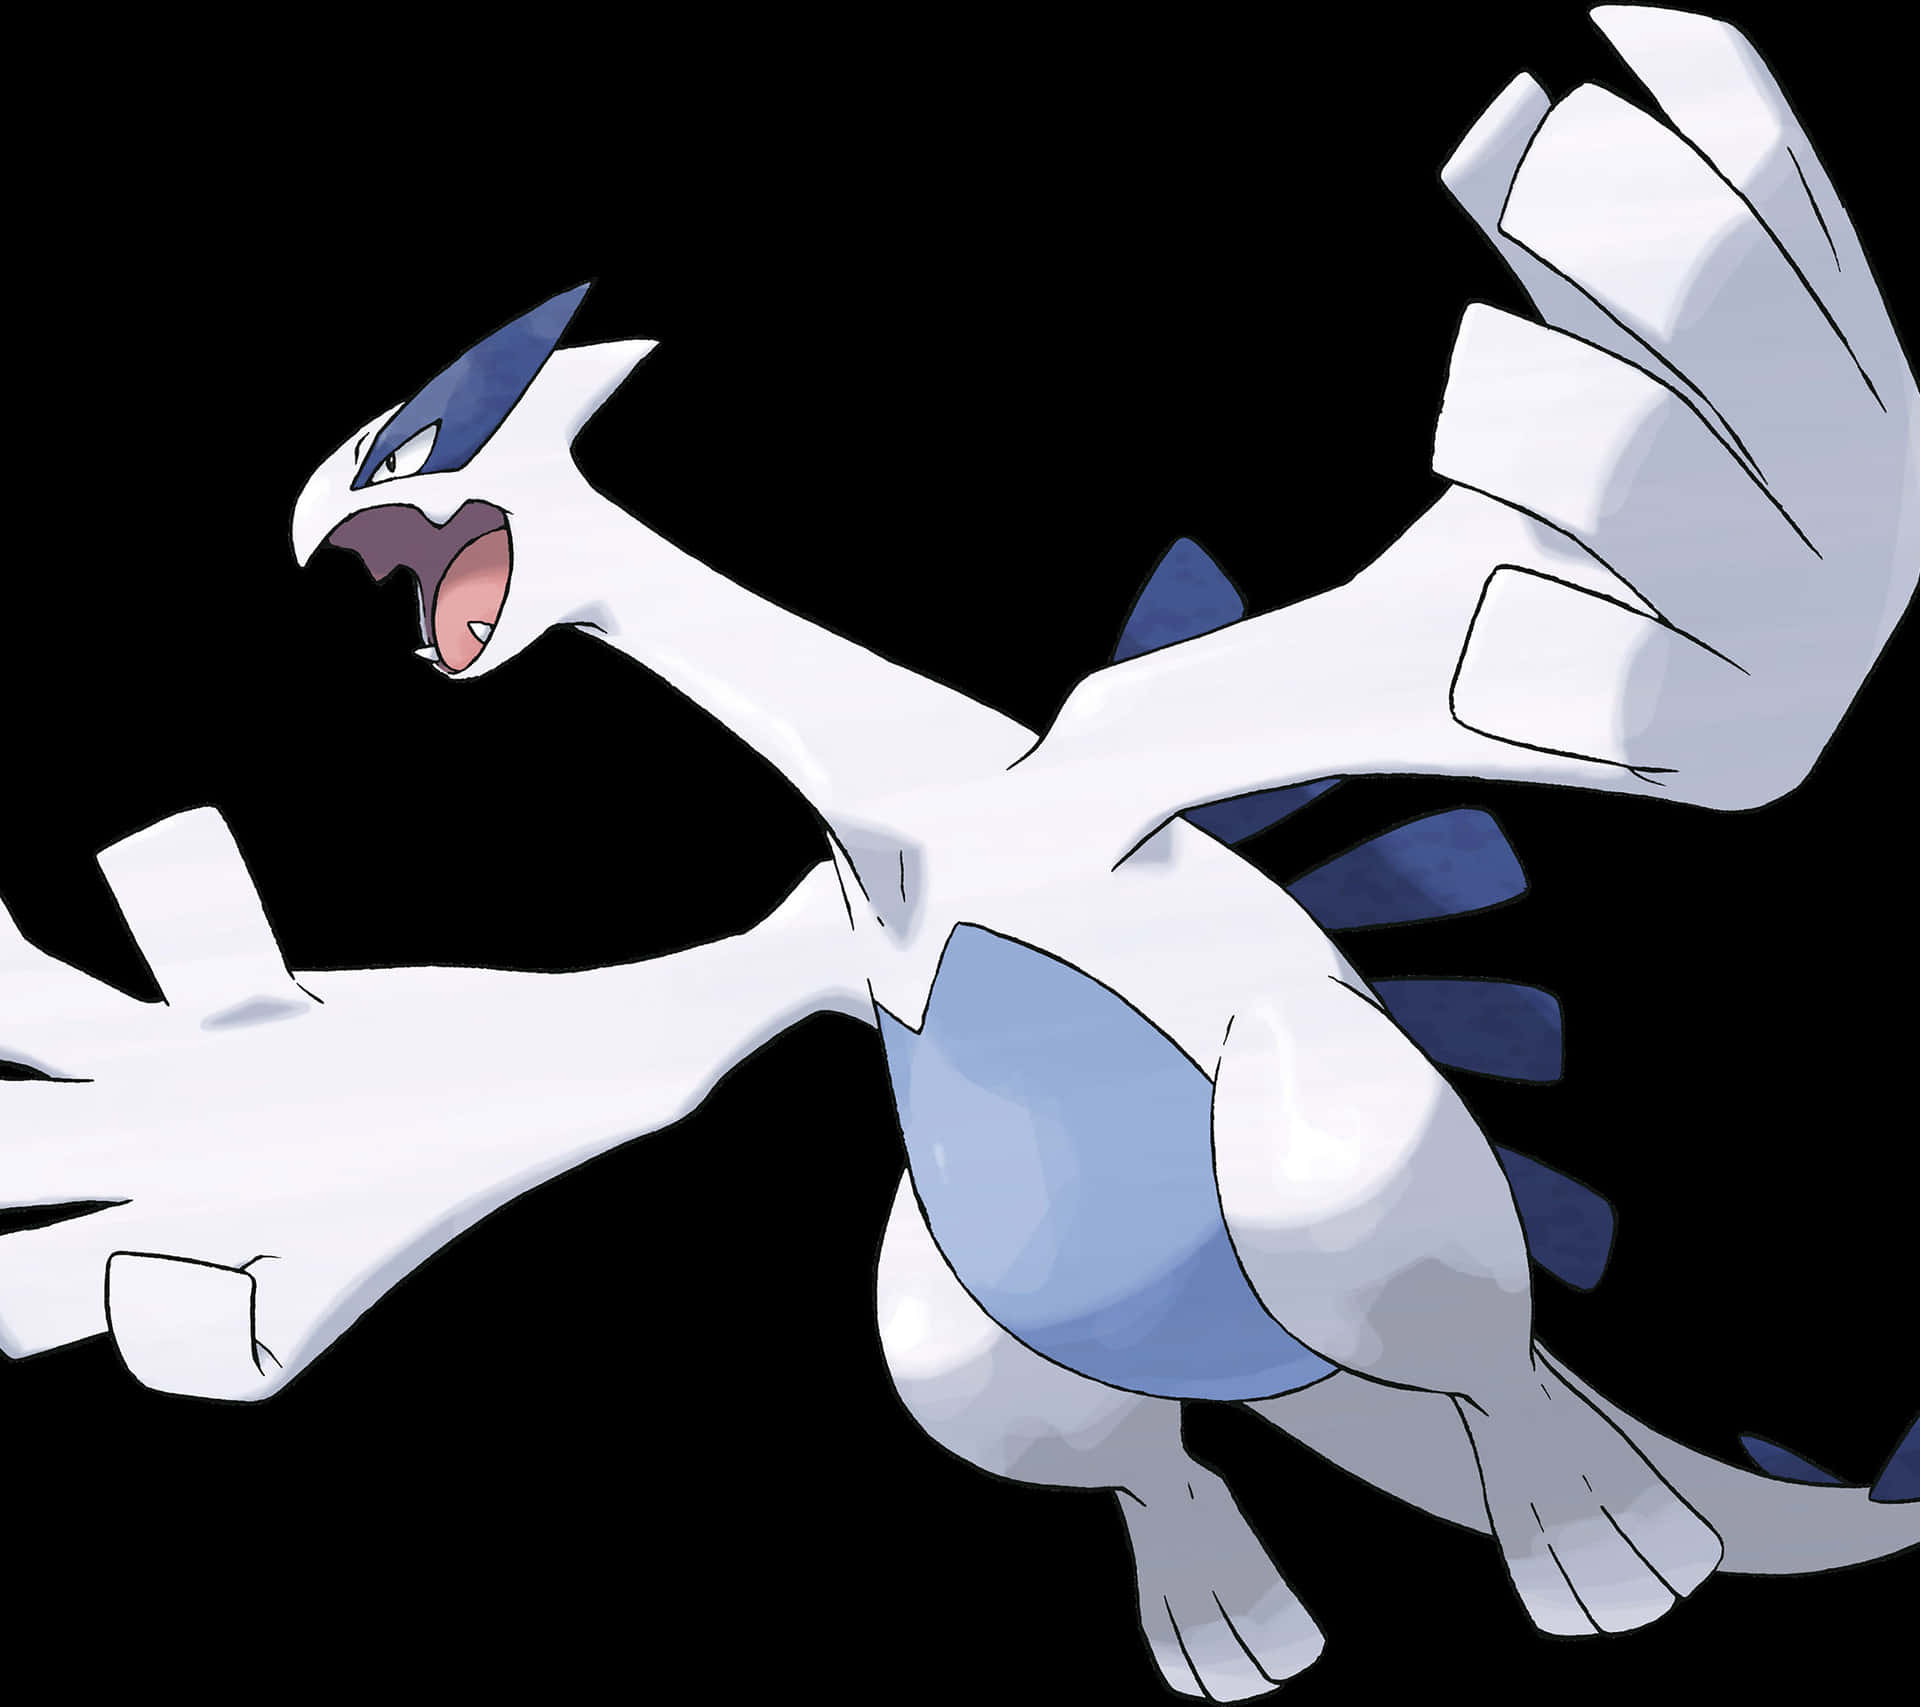 Einewunderschöne Silhouette Von Lugia - Dem Legendären Fliegenden Pokémon.